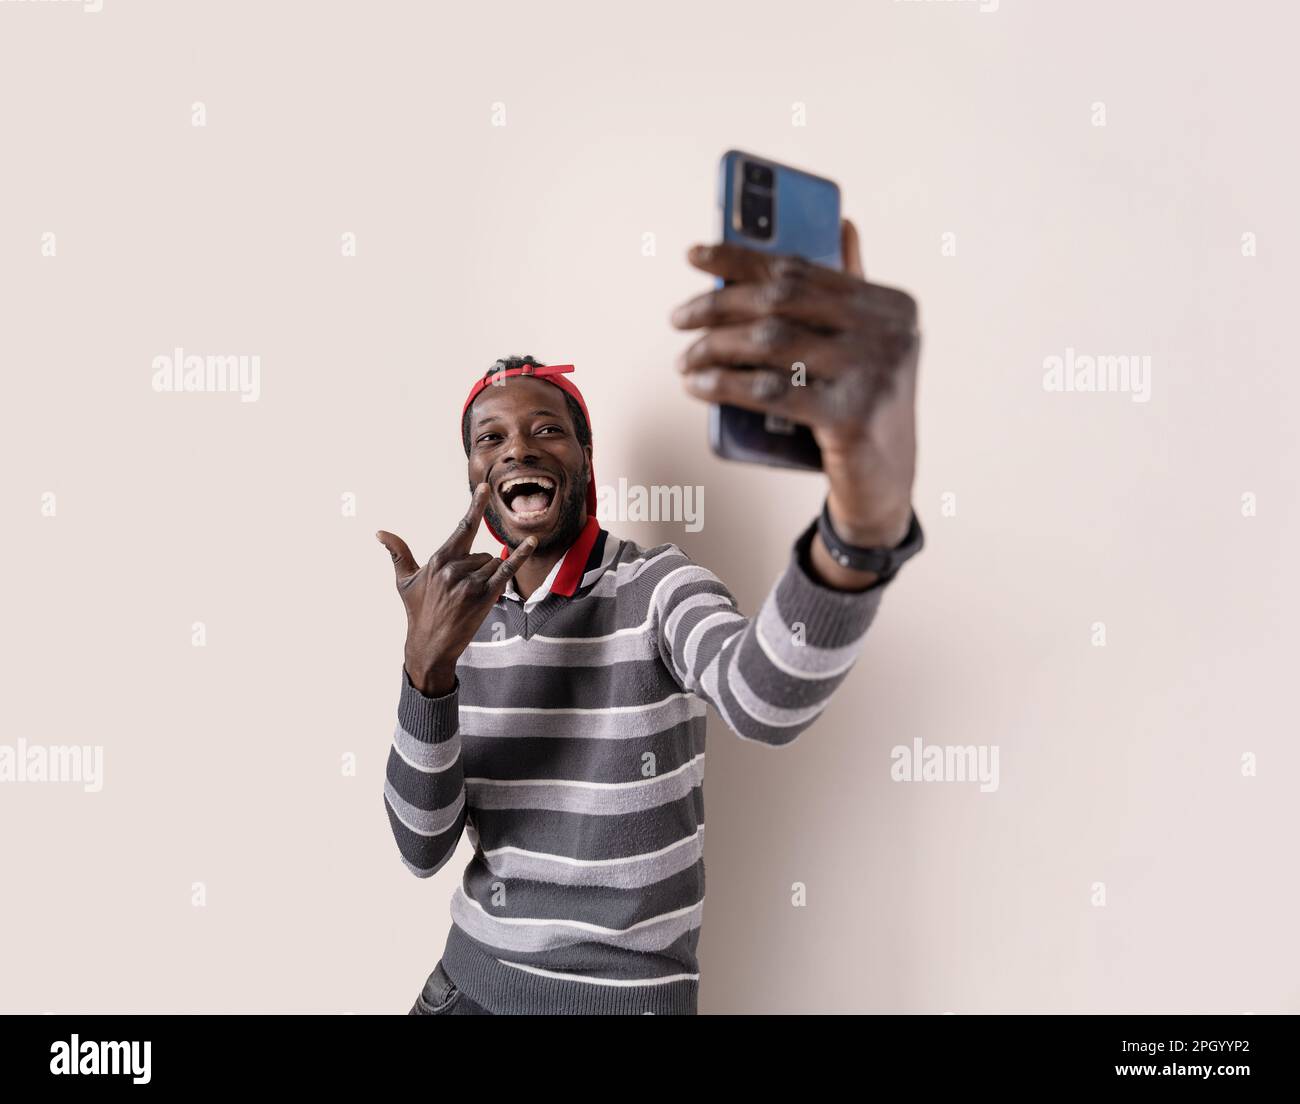 Giovane uomo africano allegro, con un maglione a righe grigie, un volto divertente e un gesto d'amore rock 'n' roll mentre si prende un selfie smartphone. Foto Stock